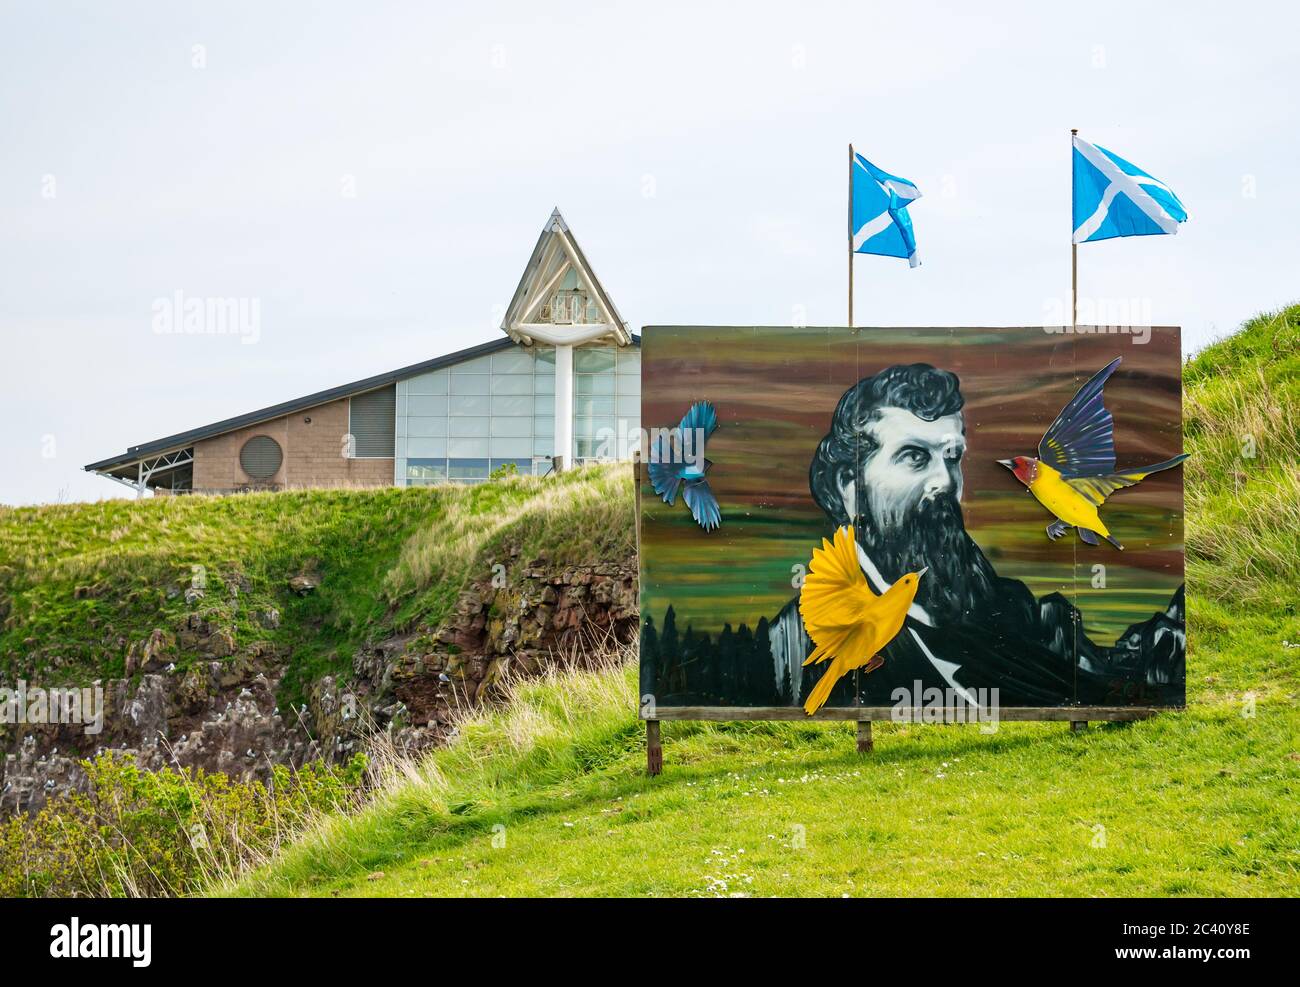 Centre de loisirs Dunbar avec portrait de John Muir, écologiste et naturaliste, Dunbar, East Lothian, Écosse, Royaume-Uni Banque D'Images